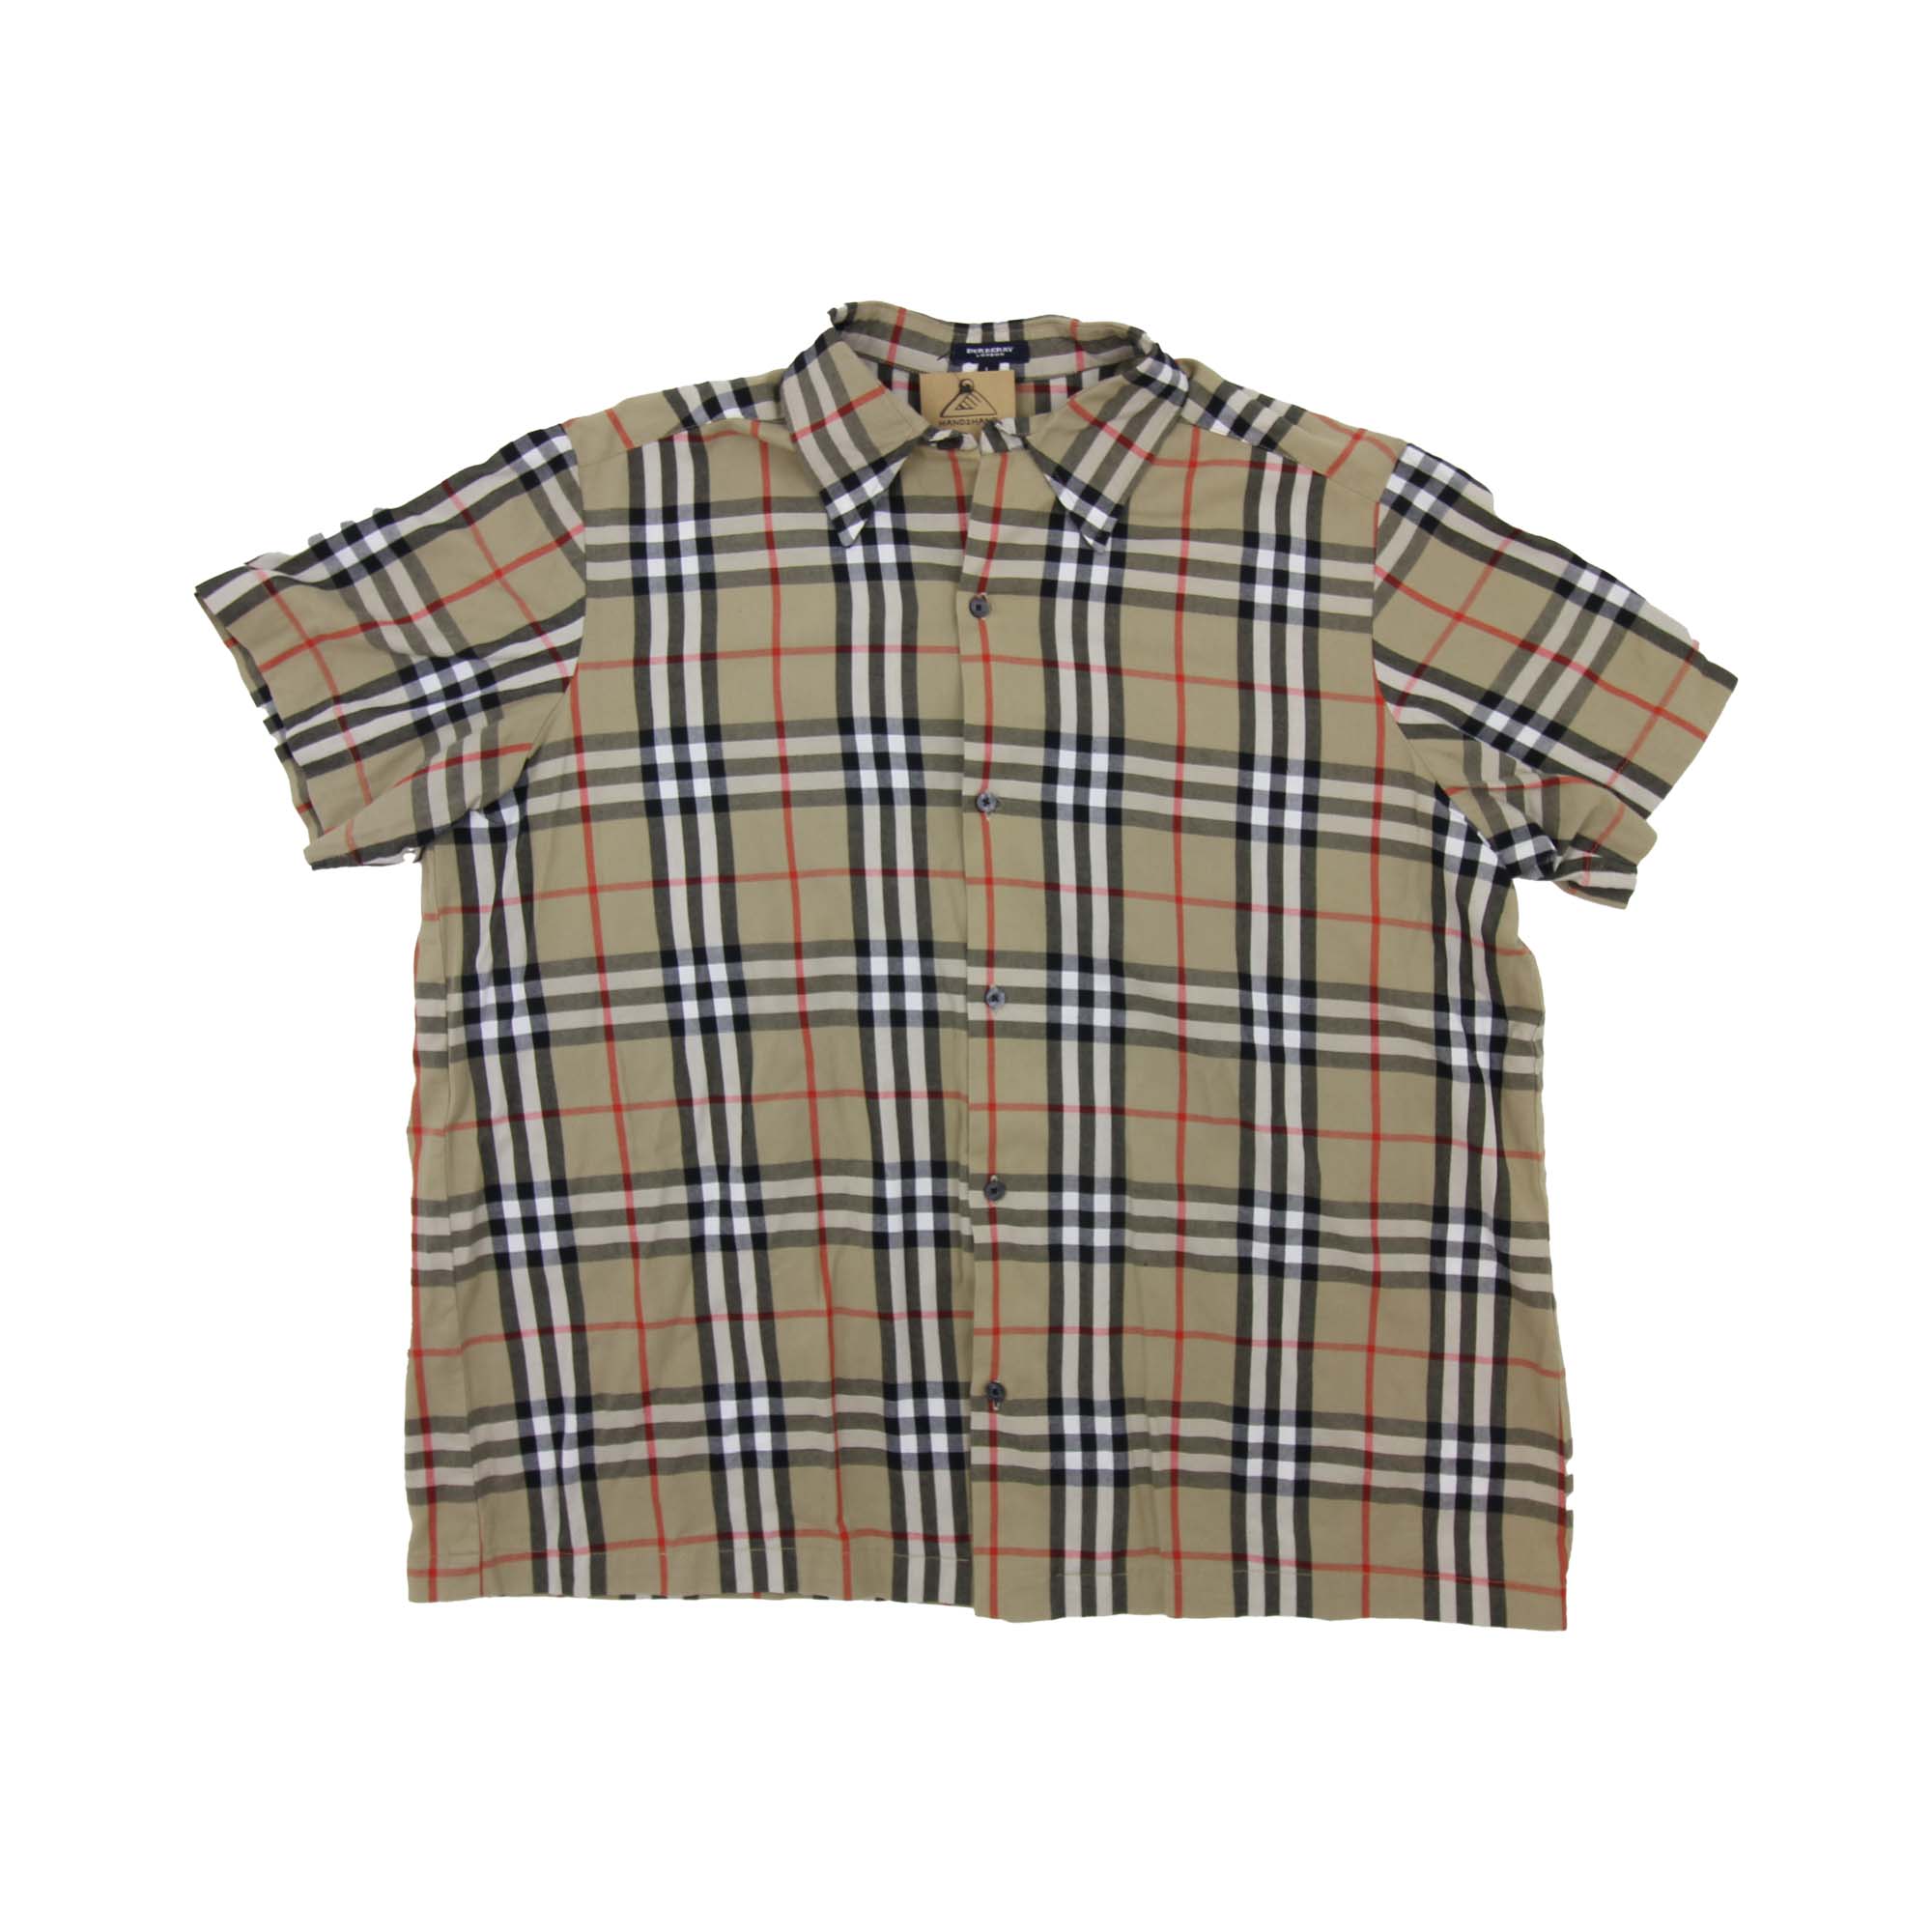 Burberry Short Sleeve Shirt - XL